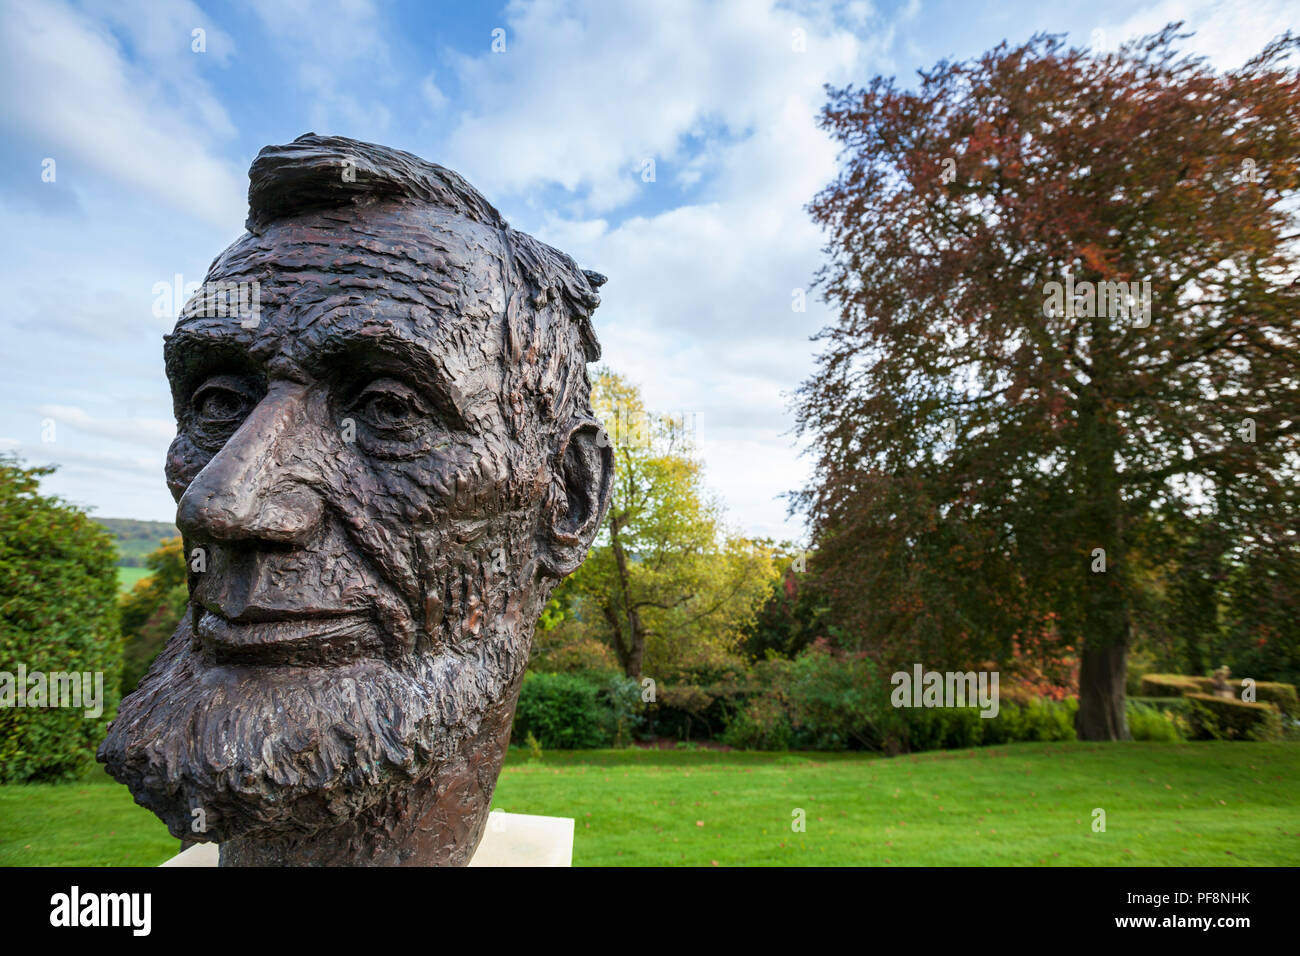 Un buste du président américain Abraham Lincoln au Musée américain de Bath, Angleterre Banque D'Images